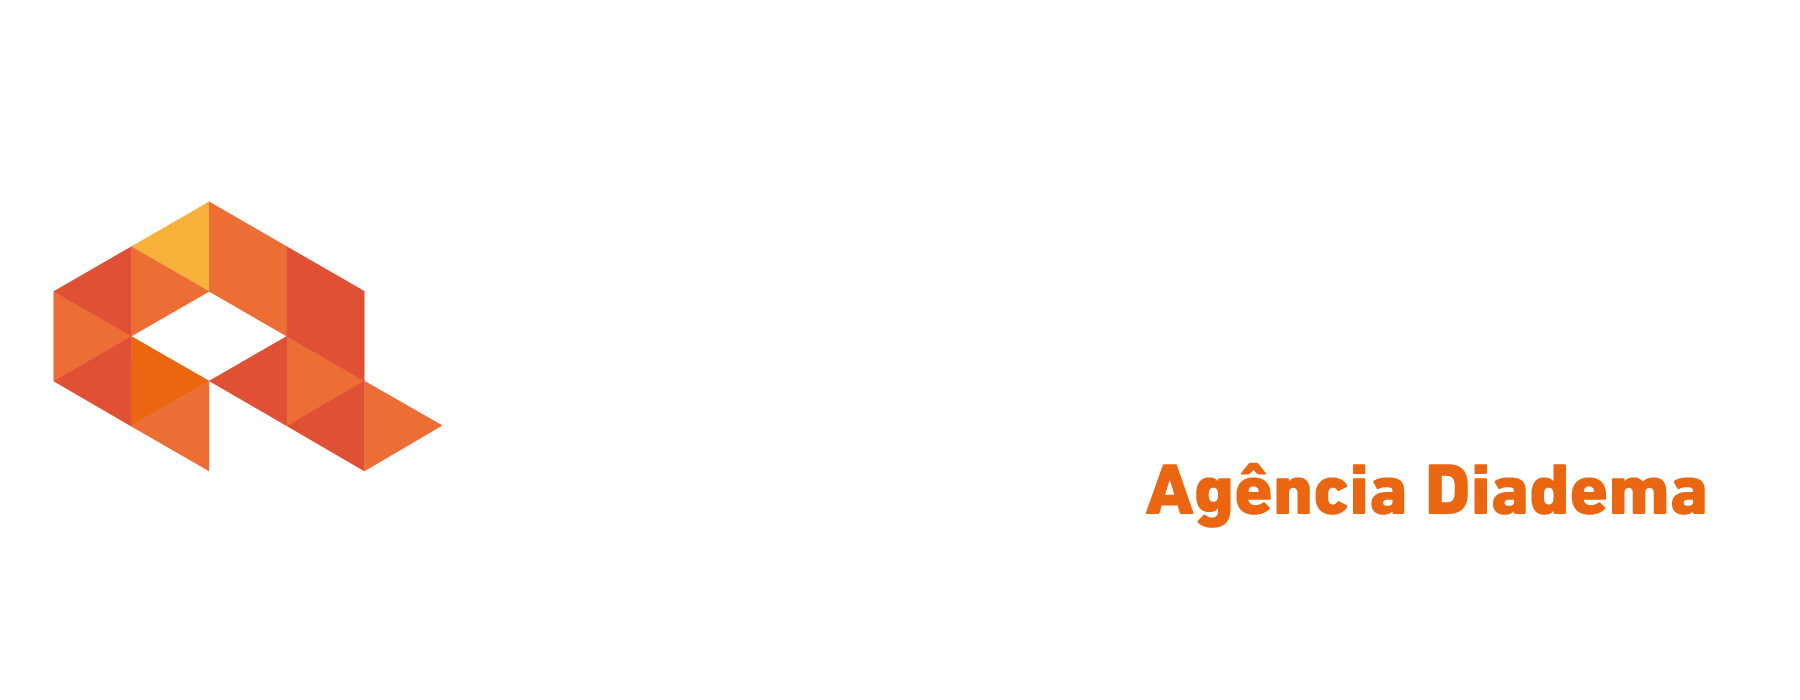 Logo crédito real Crédito Real Diadema